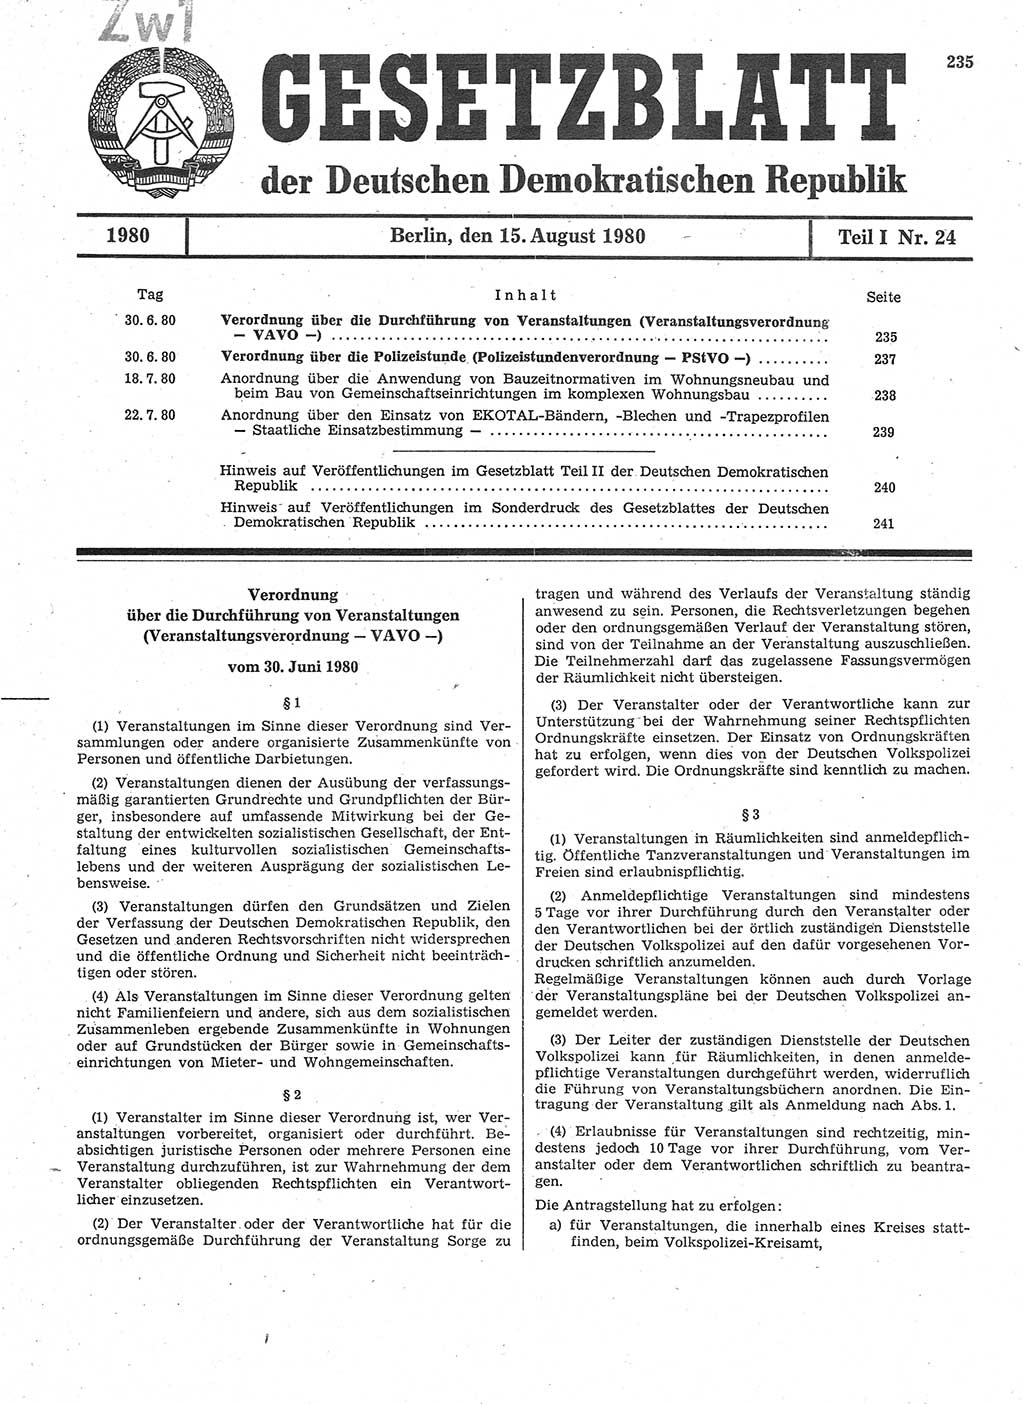 Gesetzblatt (GBl.) der Deutschen Demokratischen Republik (DDR) Teil Ⅰ 1980, Seite 235 (GBl. DDR Ⅰ 1980, S. 235)